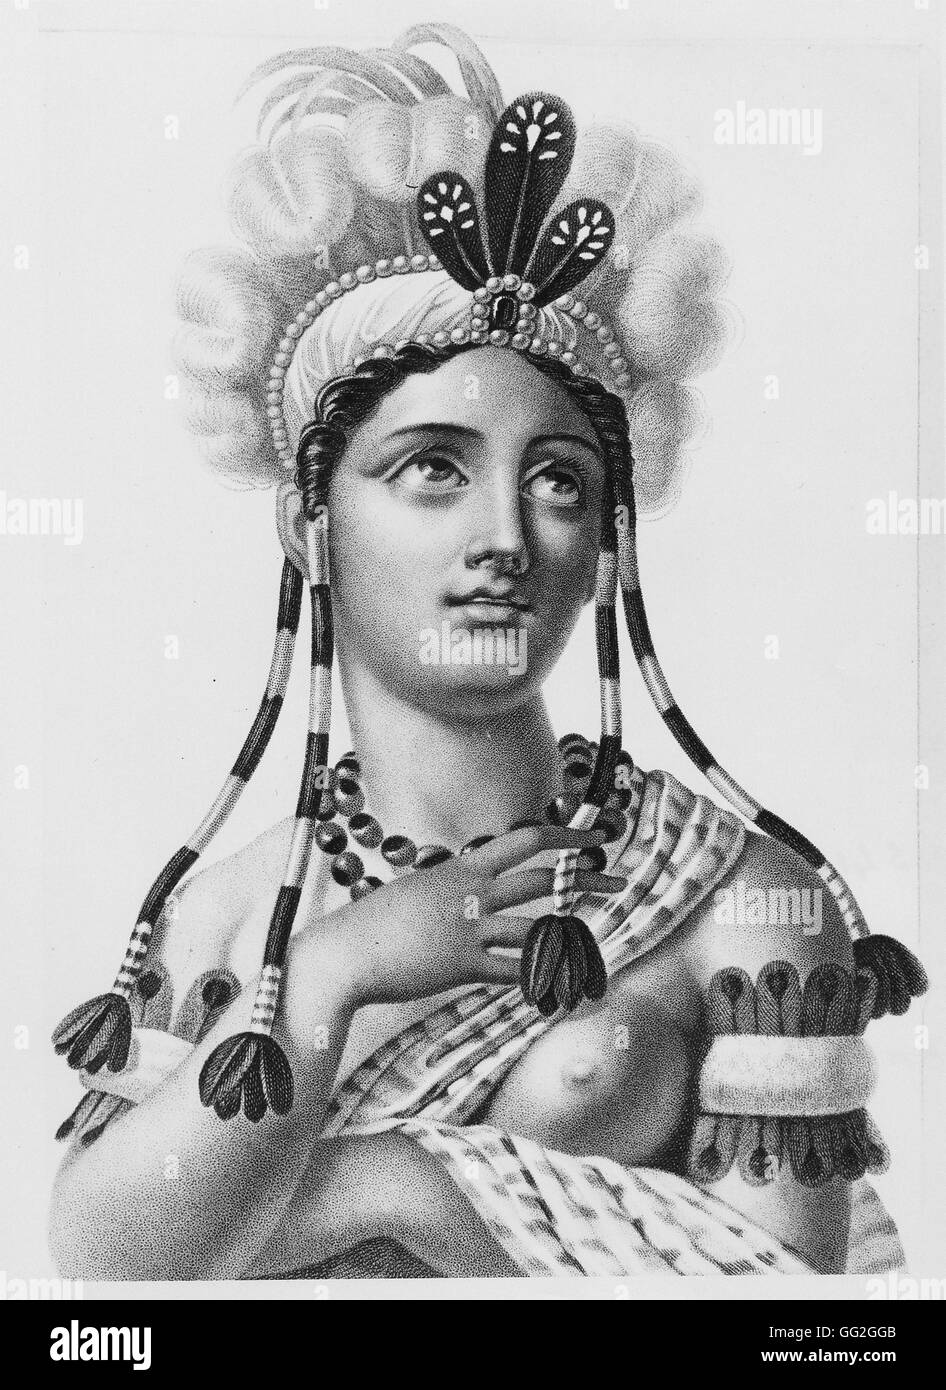 Portrait romancé d'un Indien Buste femme portant une coiffe, colliers et bagues de bras. Gravure du xixe siècle. Paris, Bibliothèque Nationale de France Banque D'Images